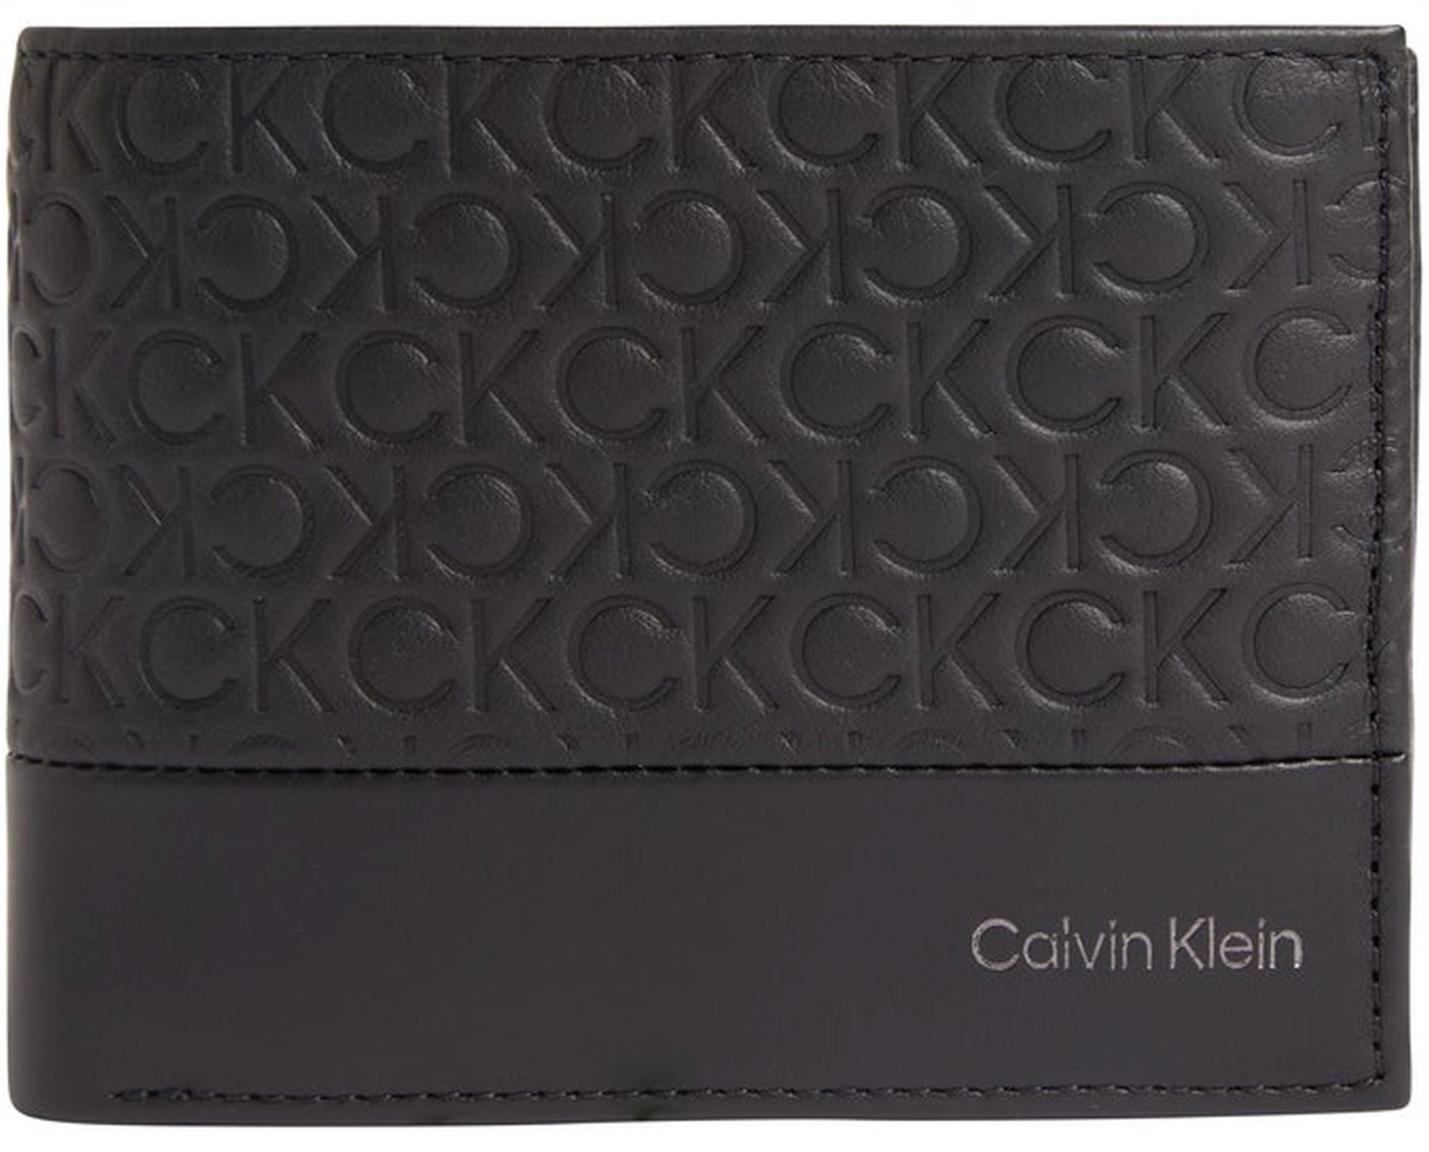 Herren Geldtasche Querformat Trifold Calvin Klein Subtle Mono RFID